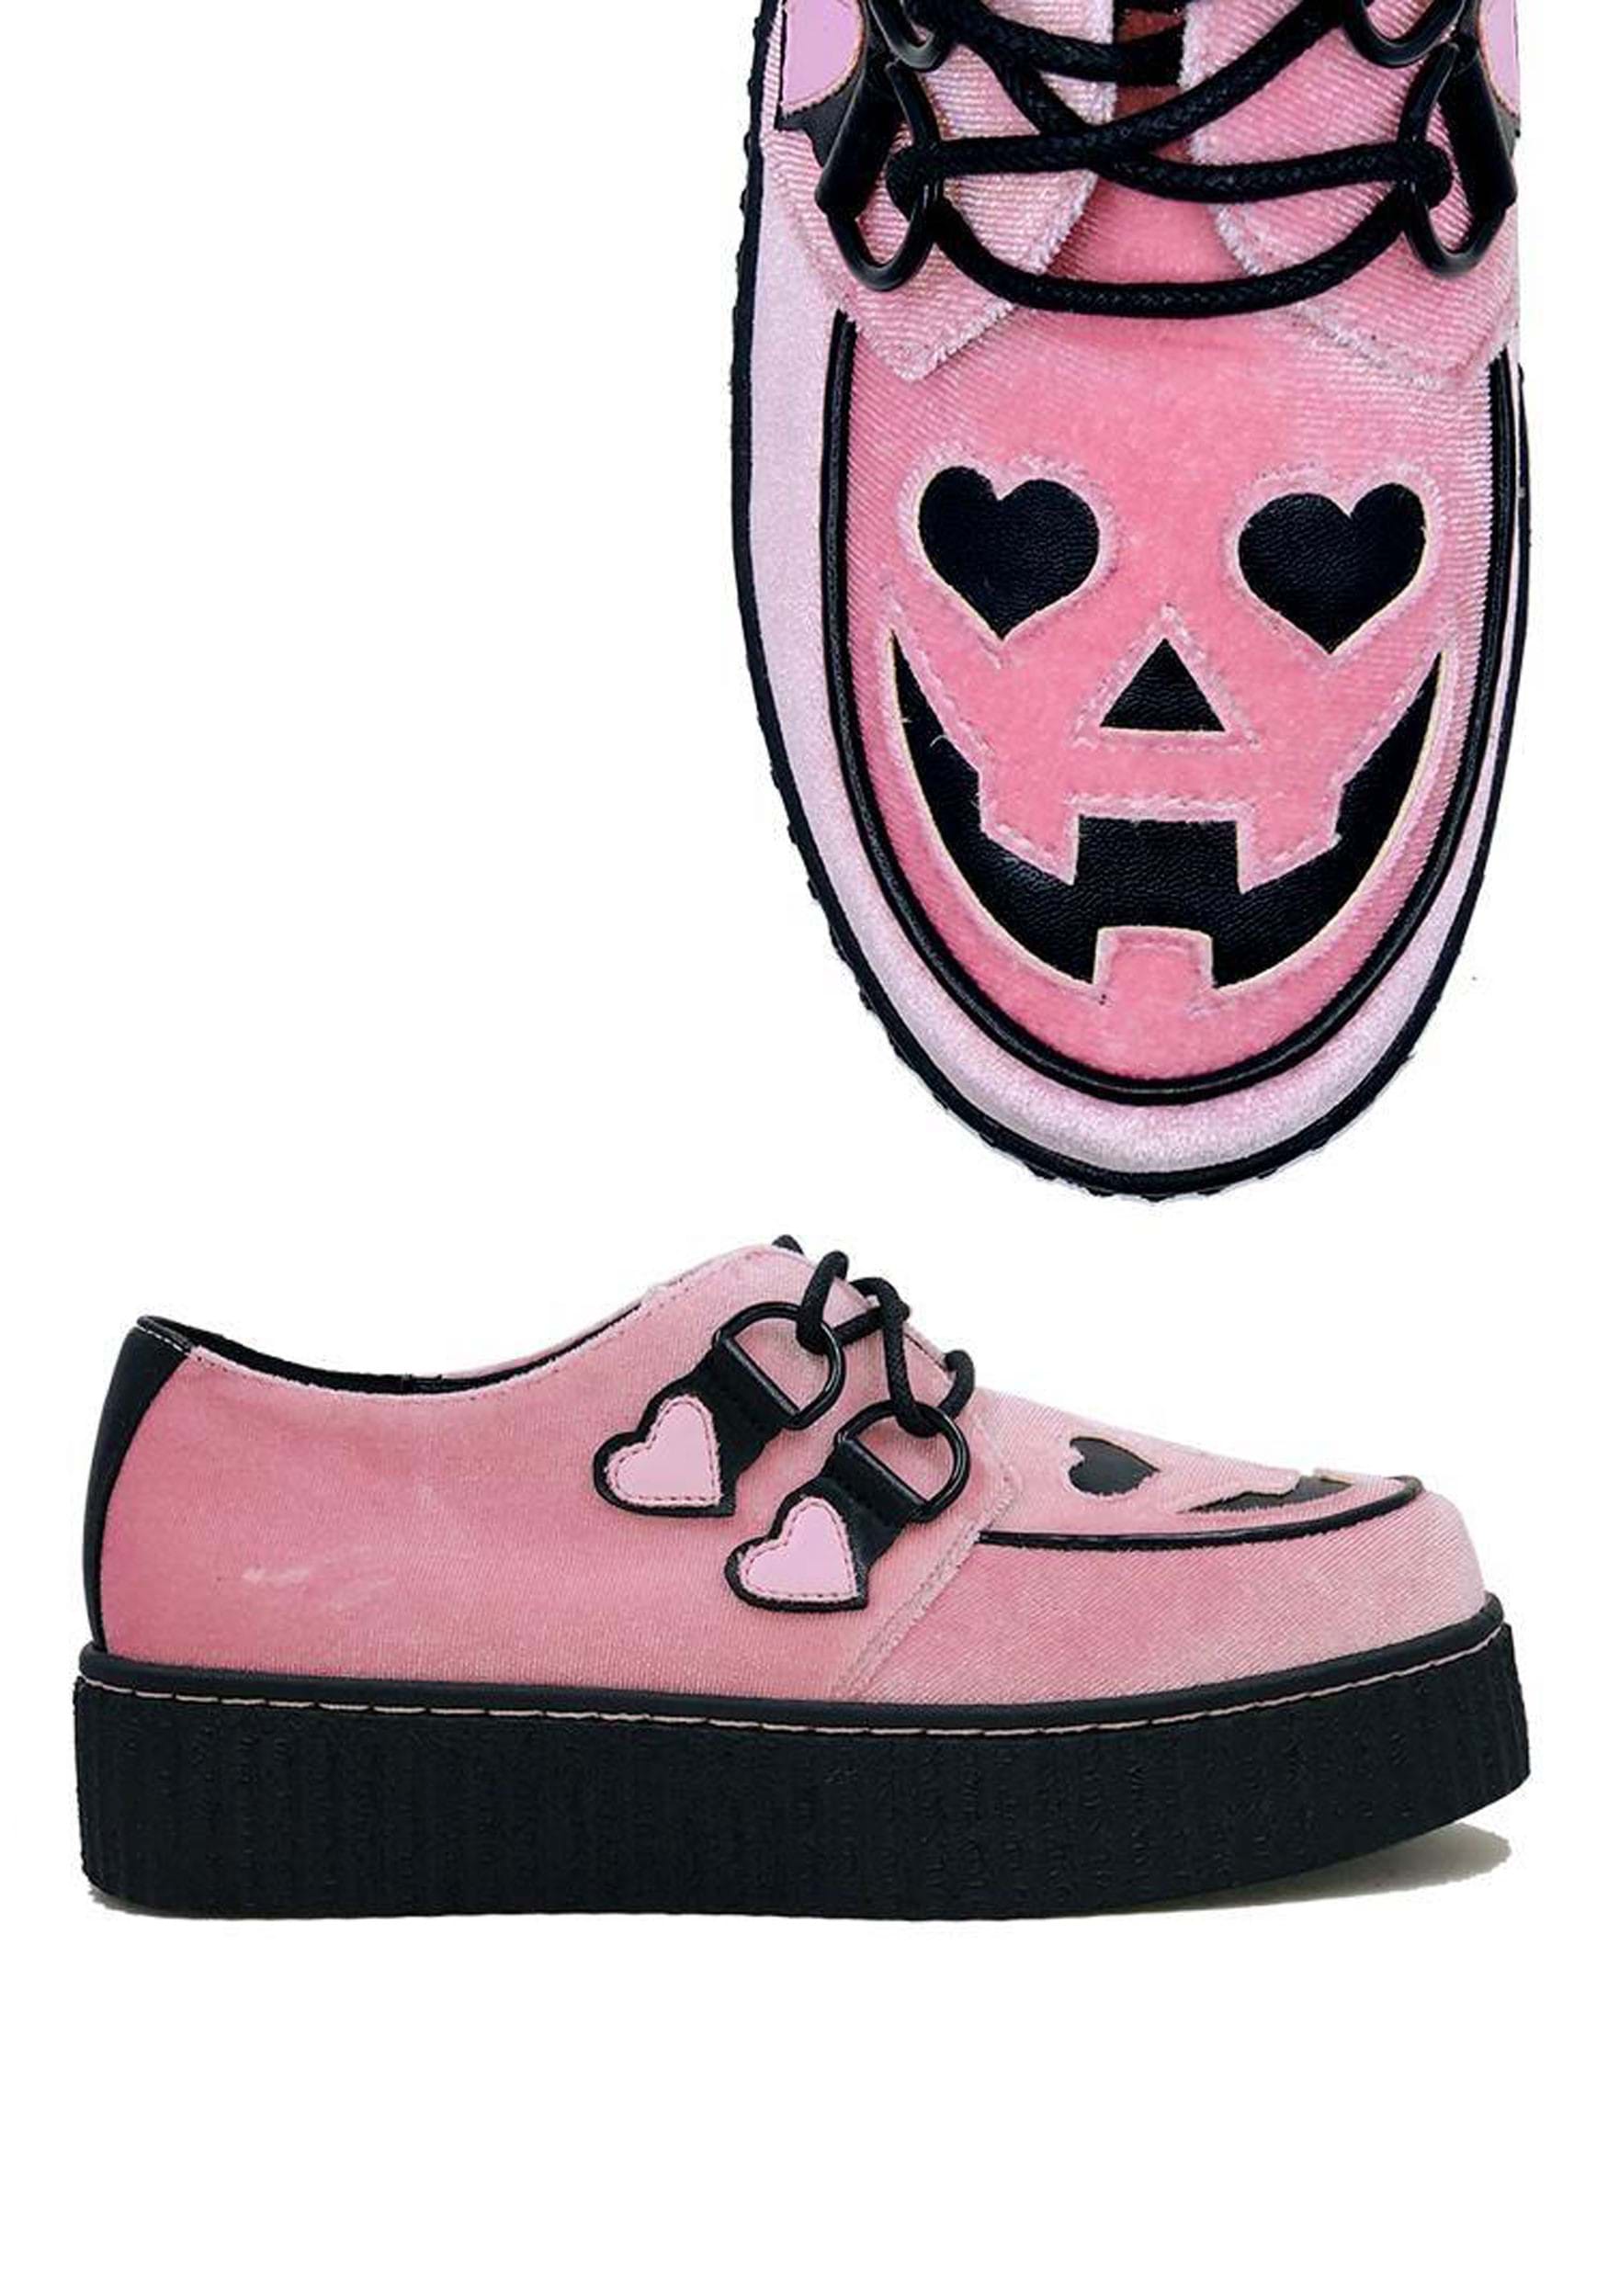 Image of Pink Velvet Jack O' Heart Creeper Shoe for Women ID SVKRYPTJACKHEART-PK-6